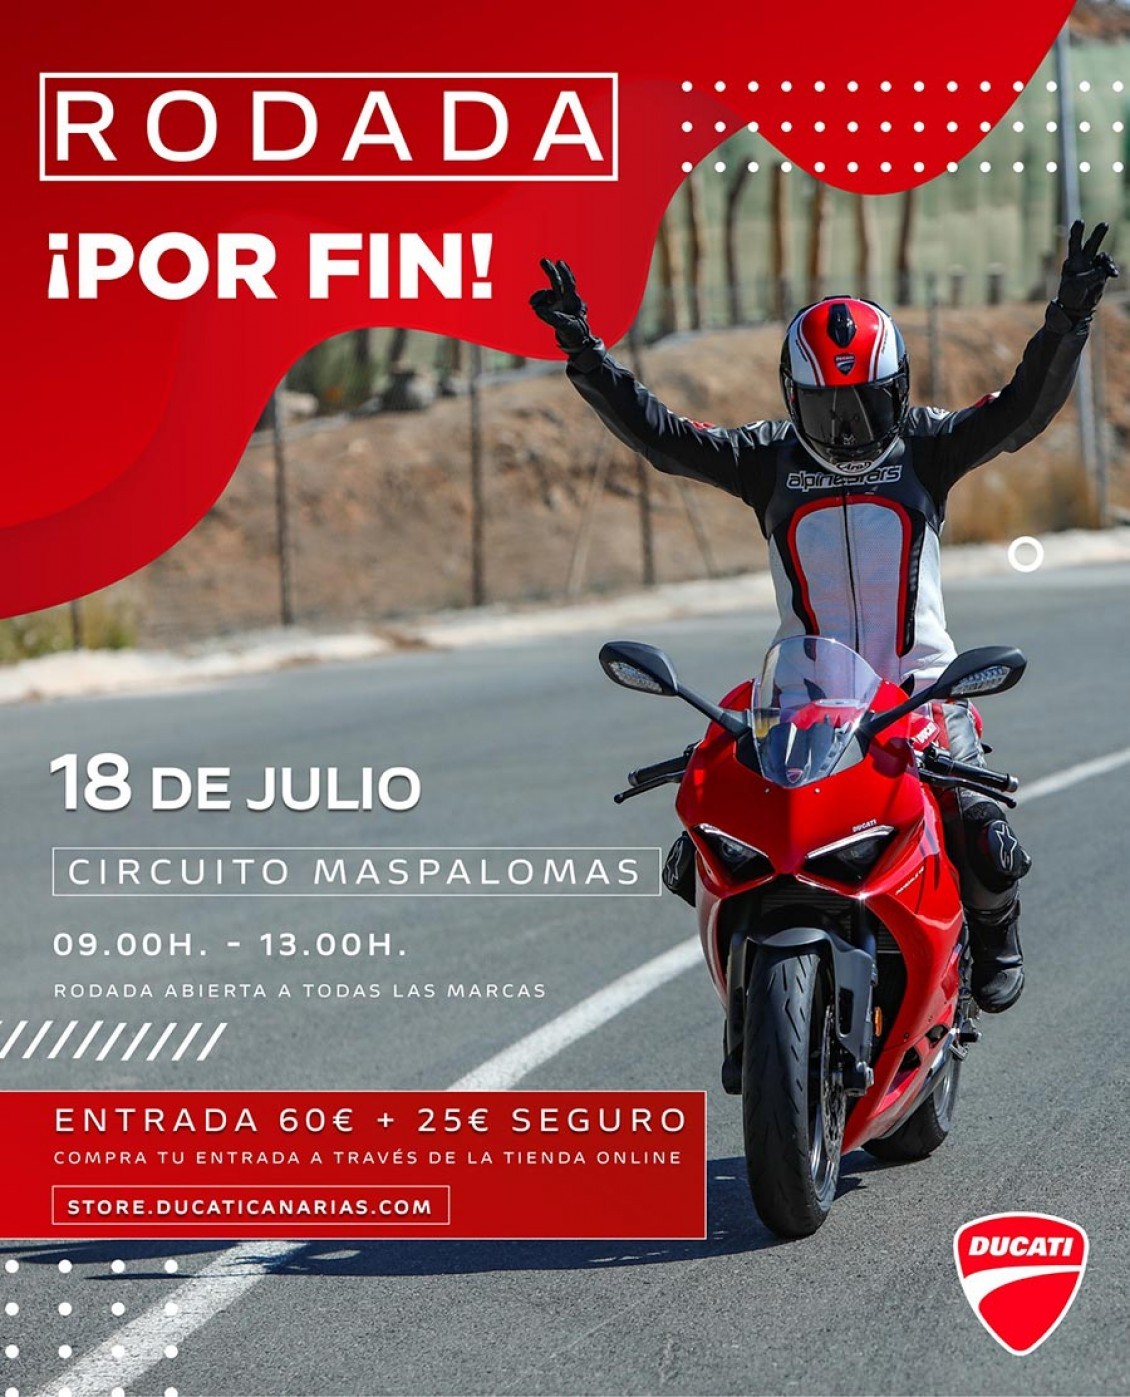 Ducati Canarias por fin vuelve a rodar